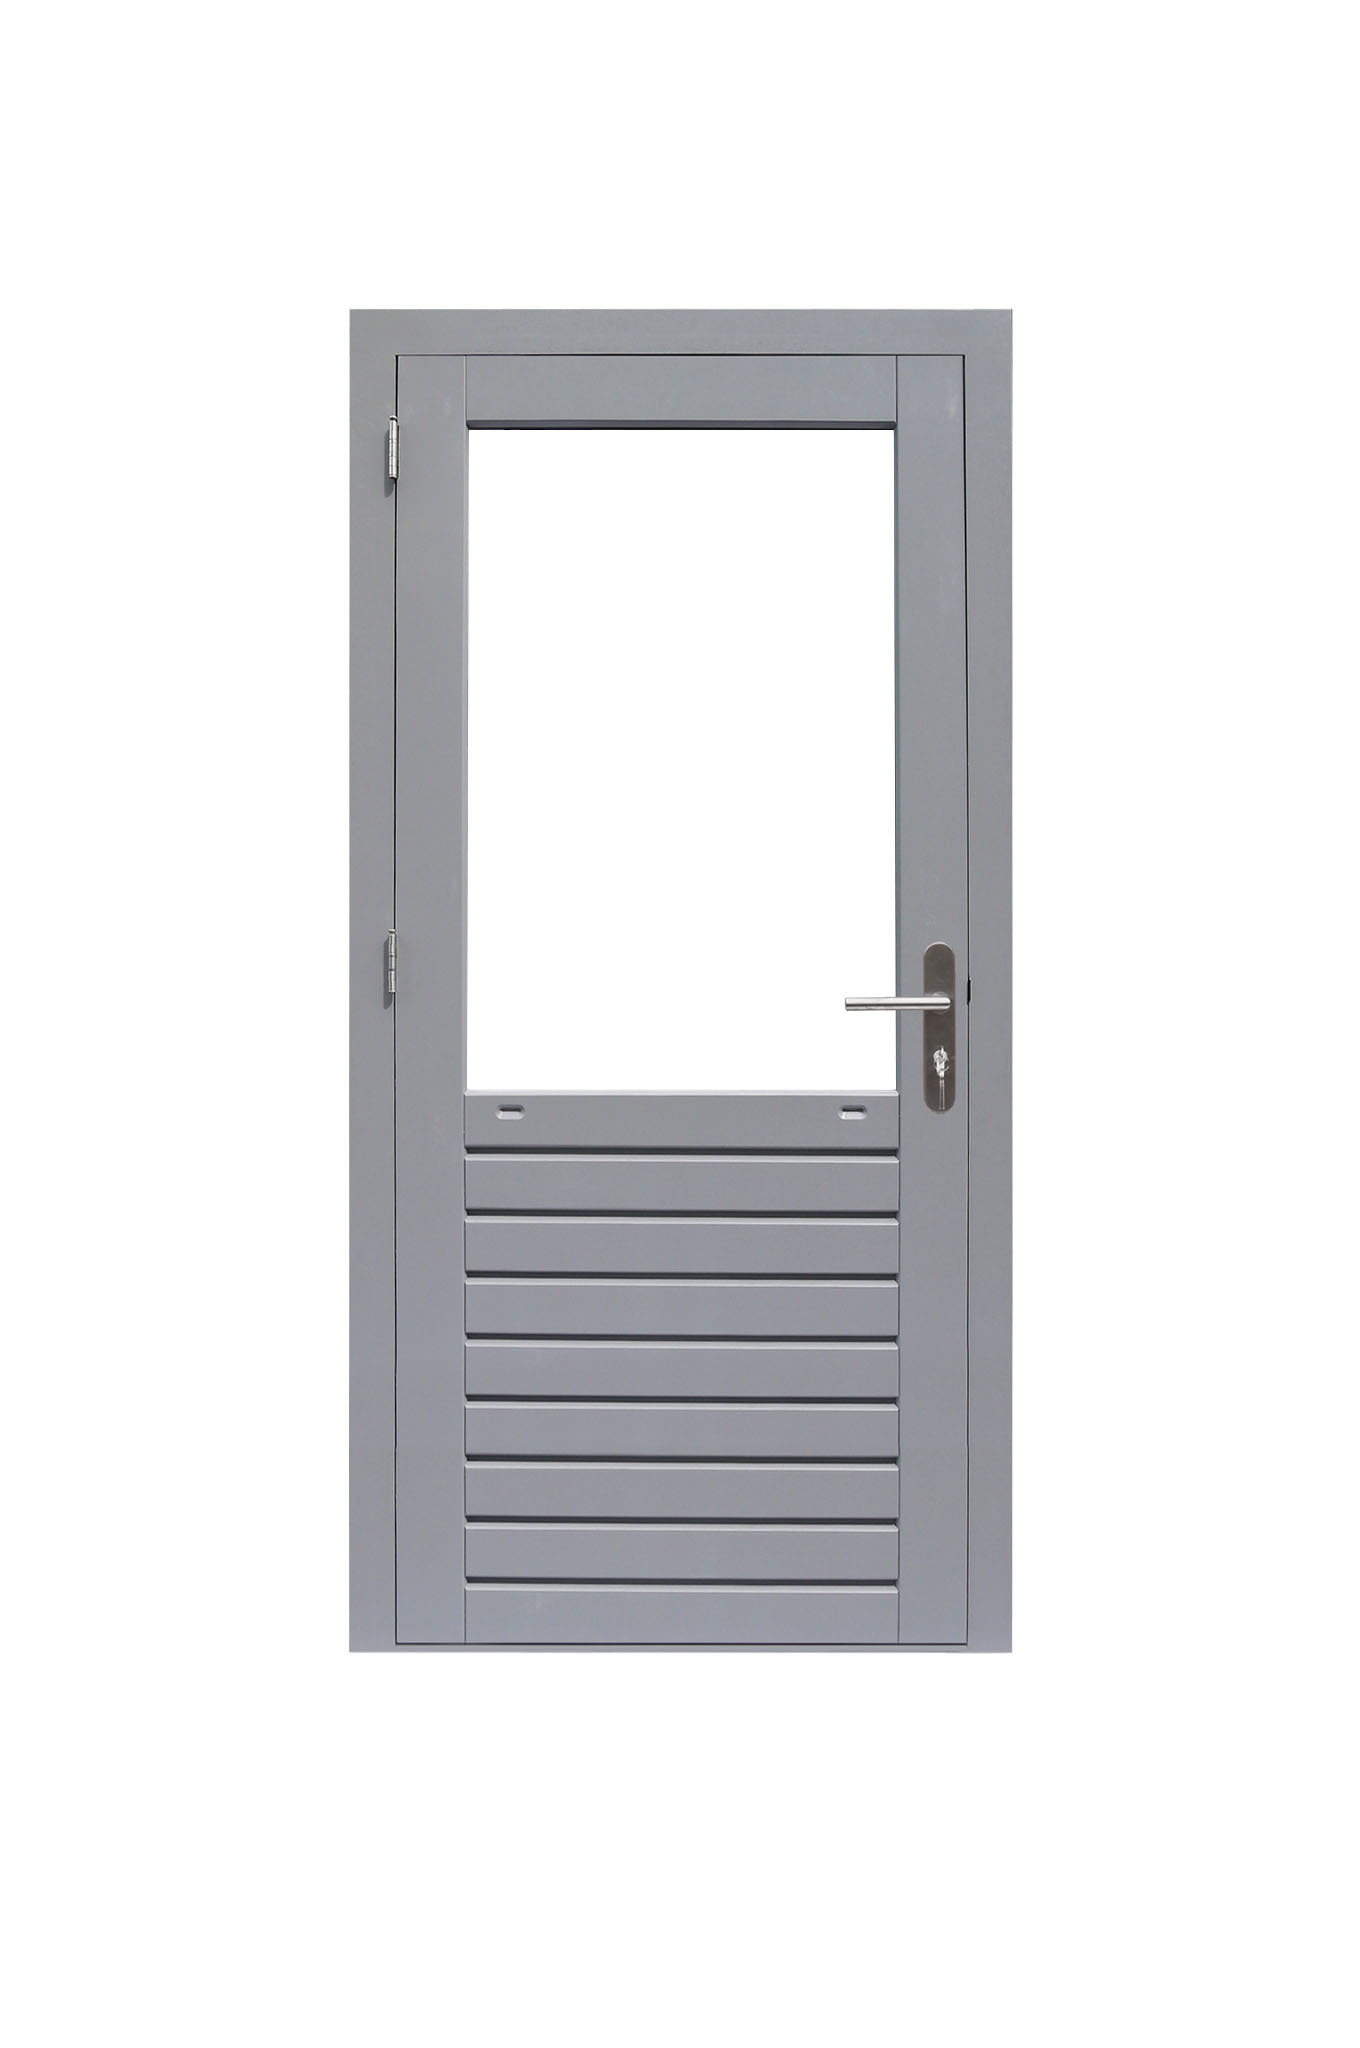 Hardhouten enkele 1-ruits deur Prestige met dubbelglas, linksdraaiend, 109 x 221 cm, grijs gegrond